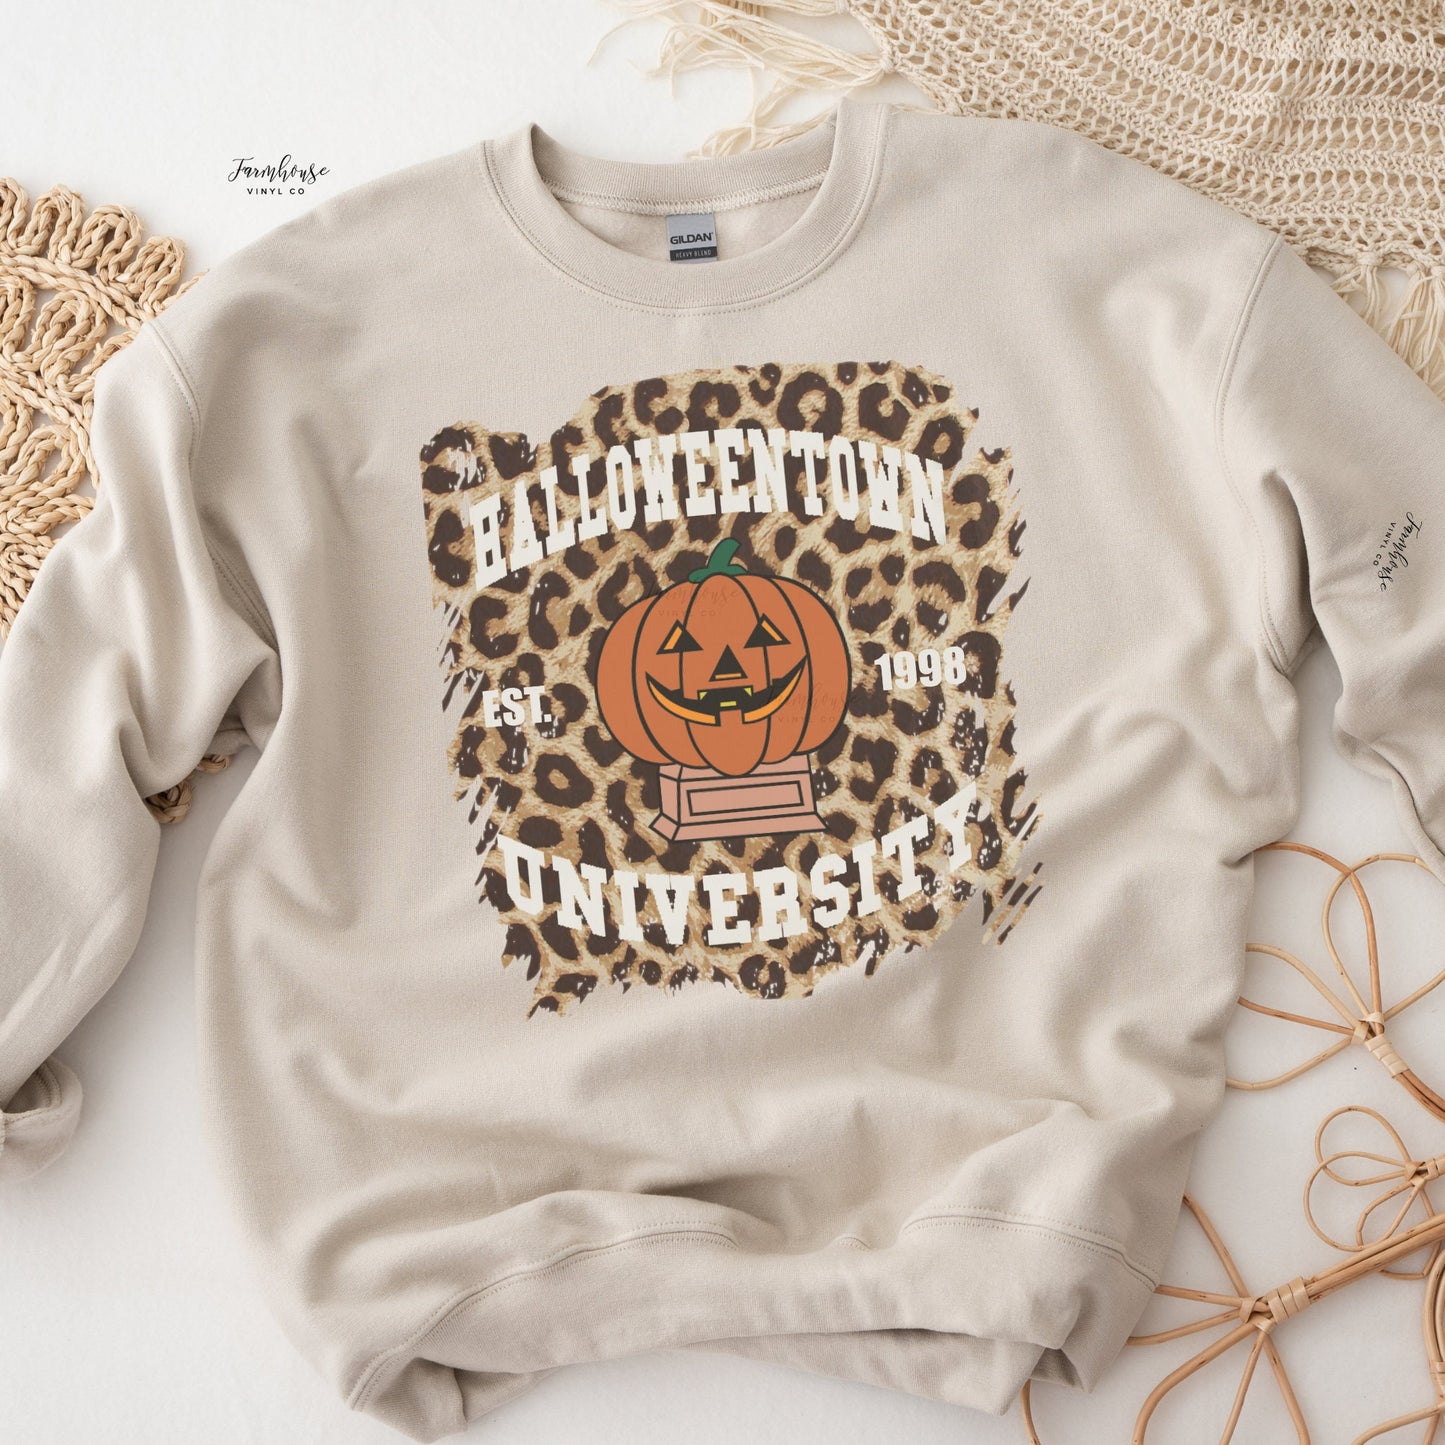 Halloweentown University Leopard Shirt - Farmhouse Vinyl Co